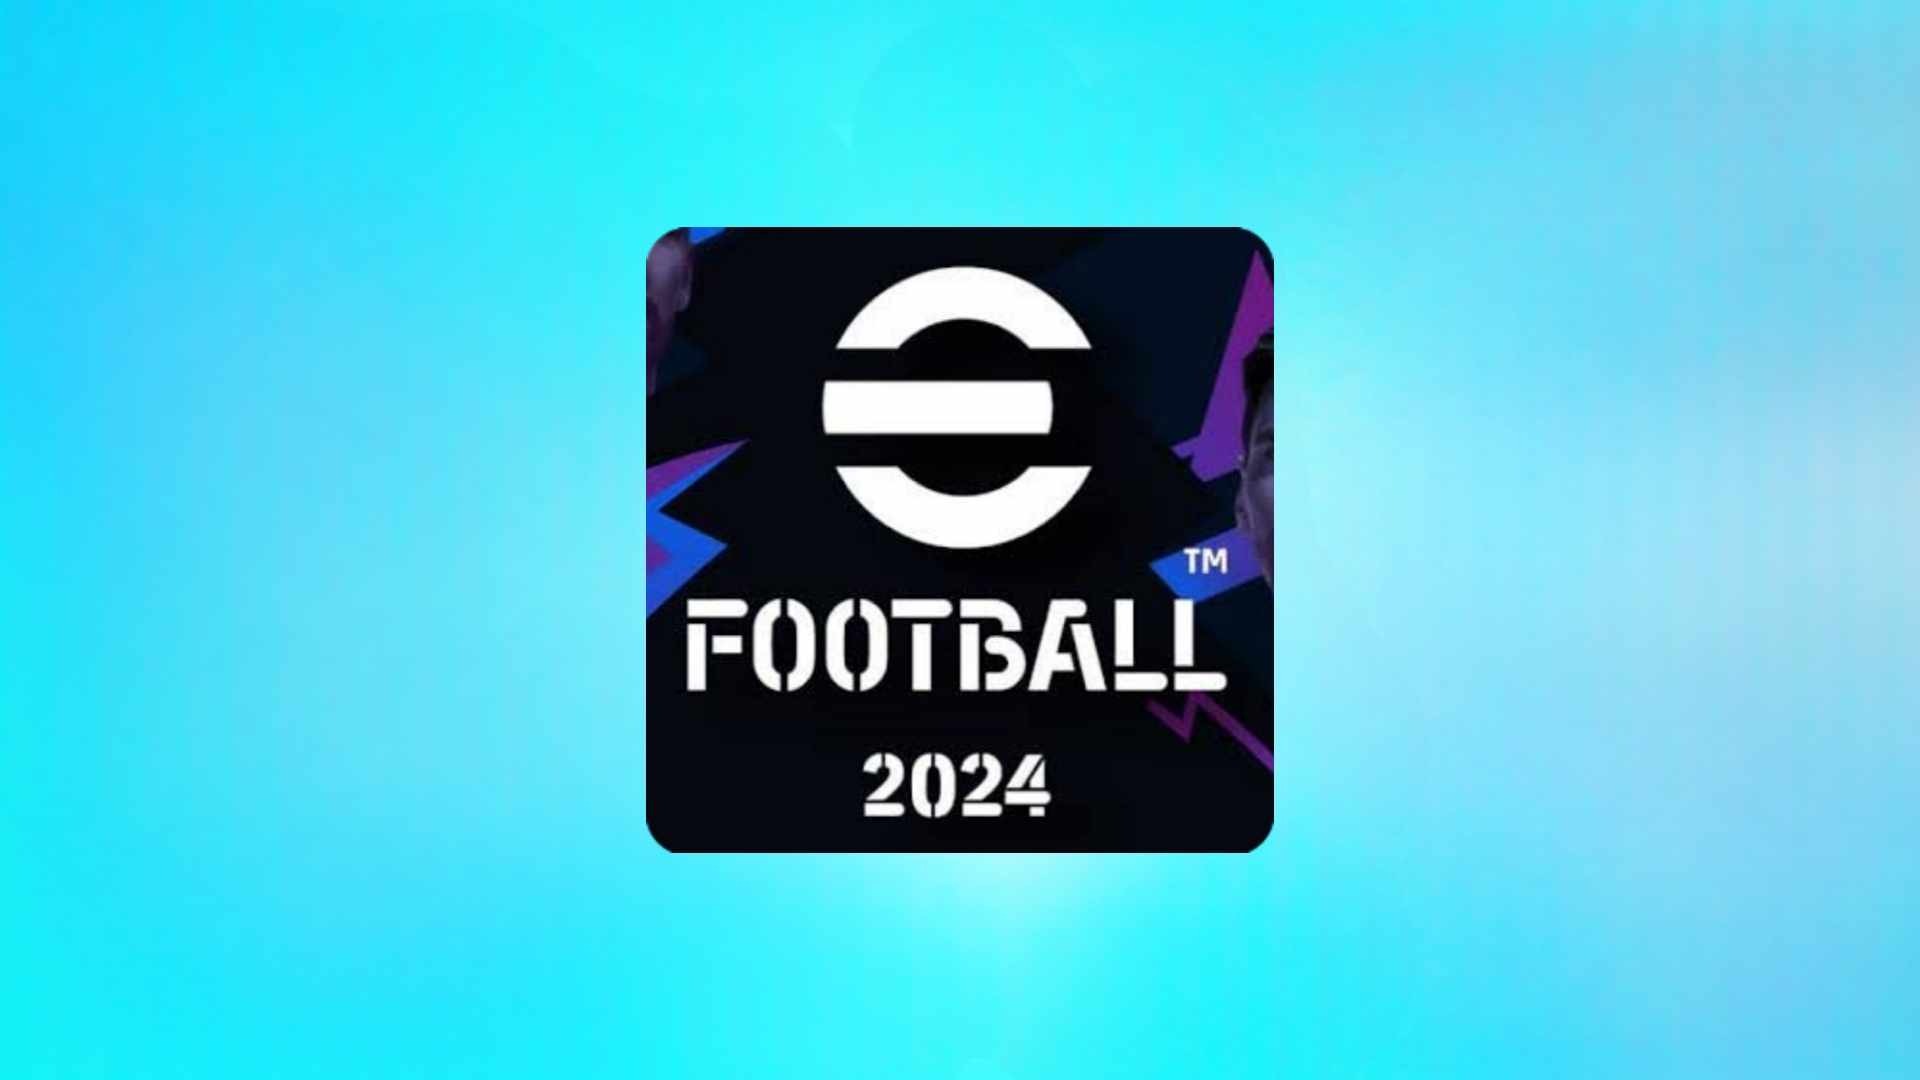 הורד את eFootball PES 2024 למחשב עם קישור ישיר